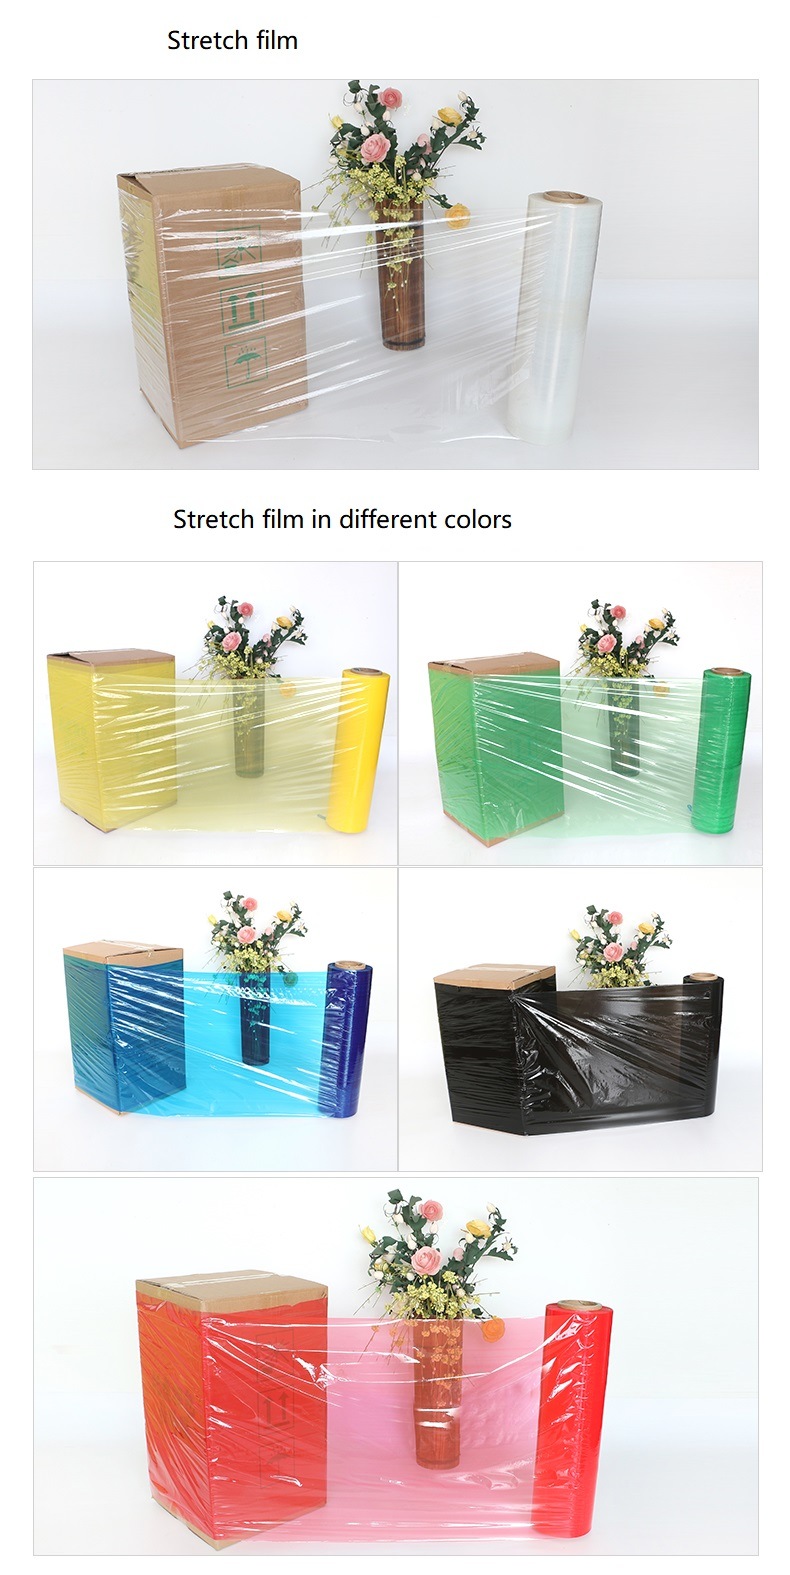 Plastic Stretch Film, Wrap Film, Stretch Wrap Film